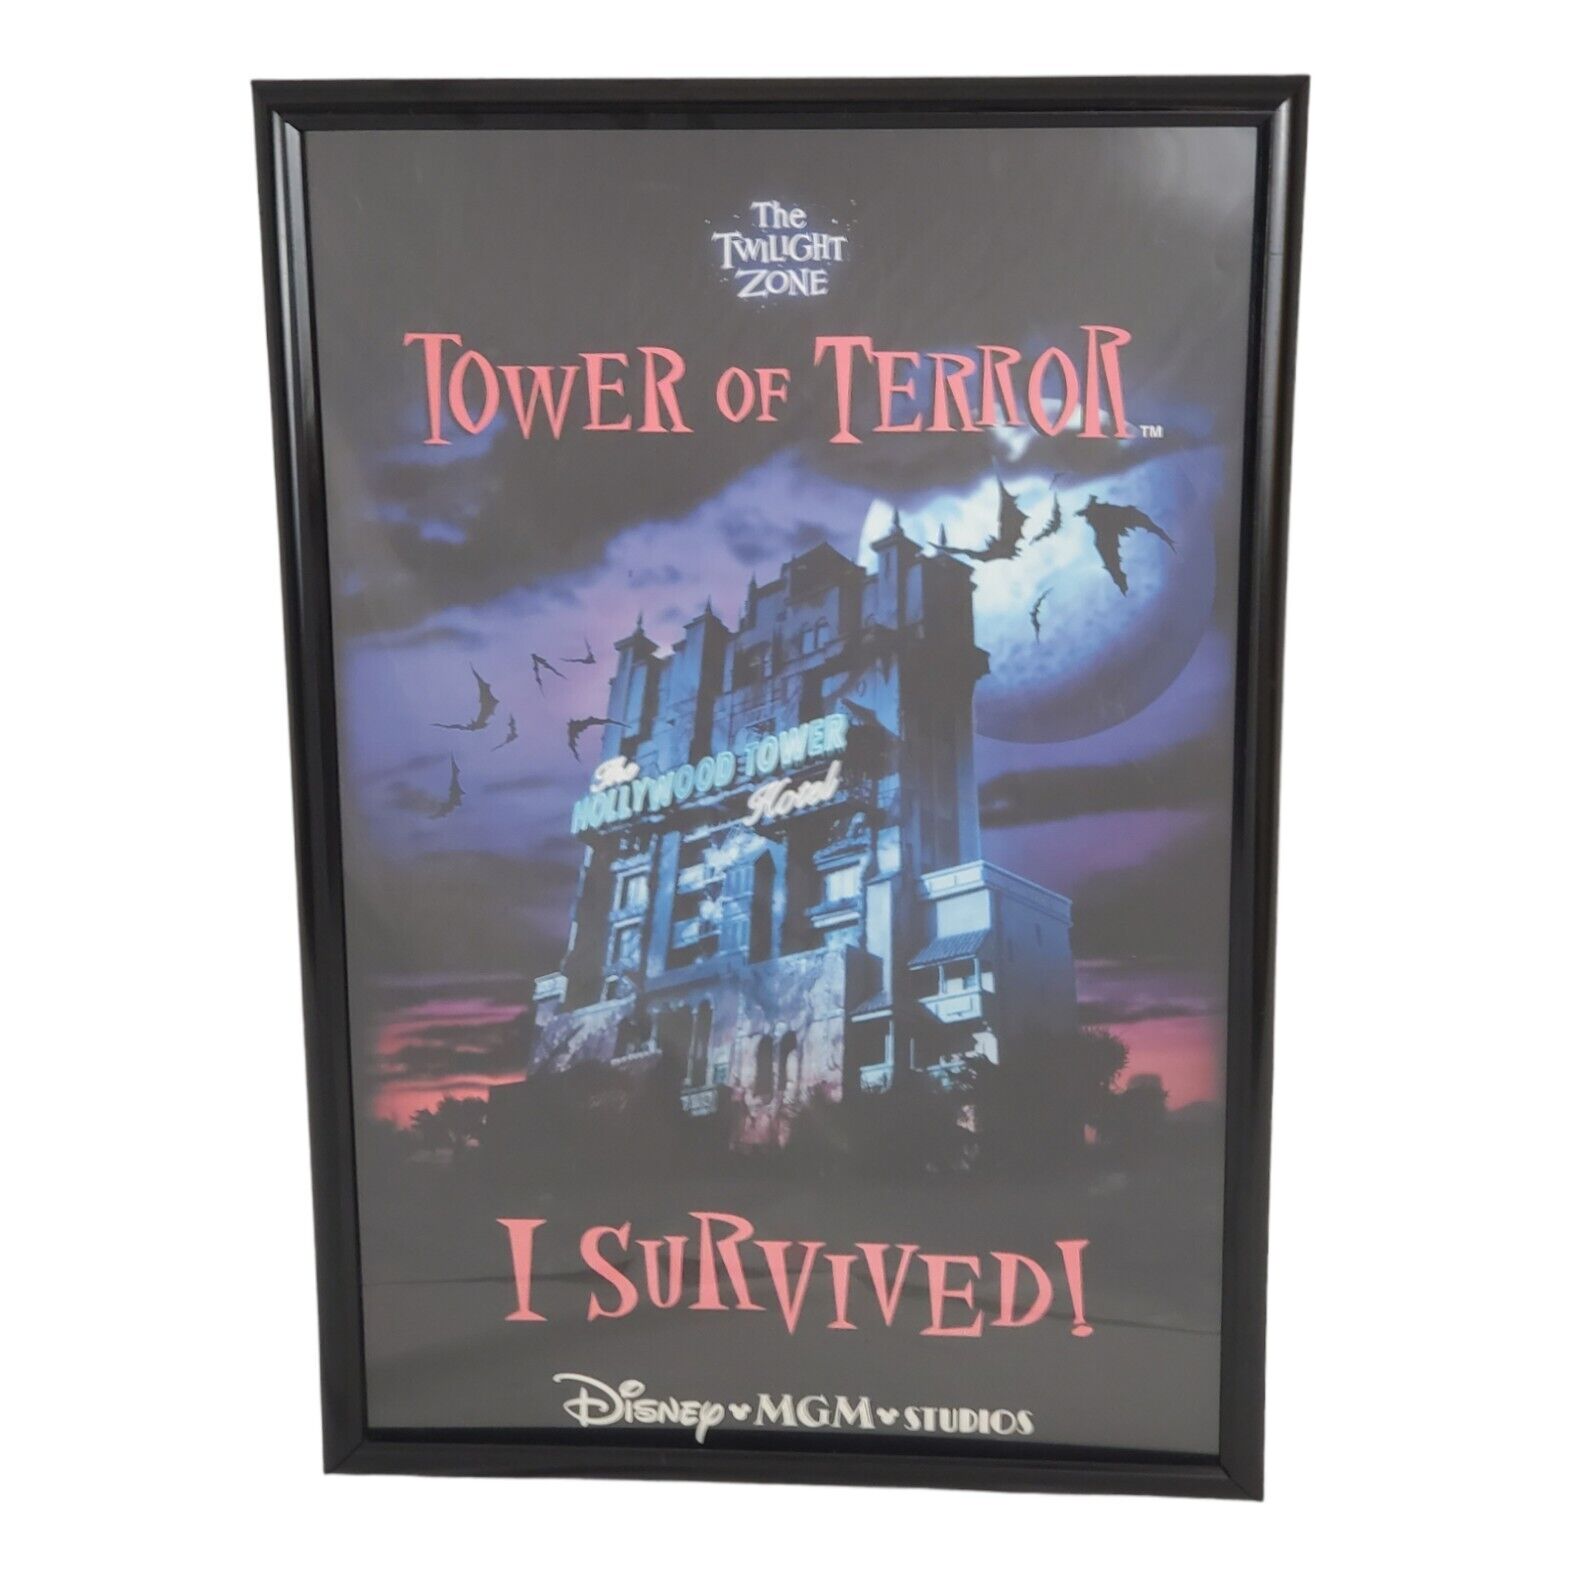 Vintage Walt Disney MGM Studios Poster Tower of Terror I Survived Framed  